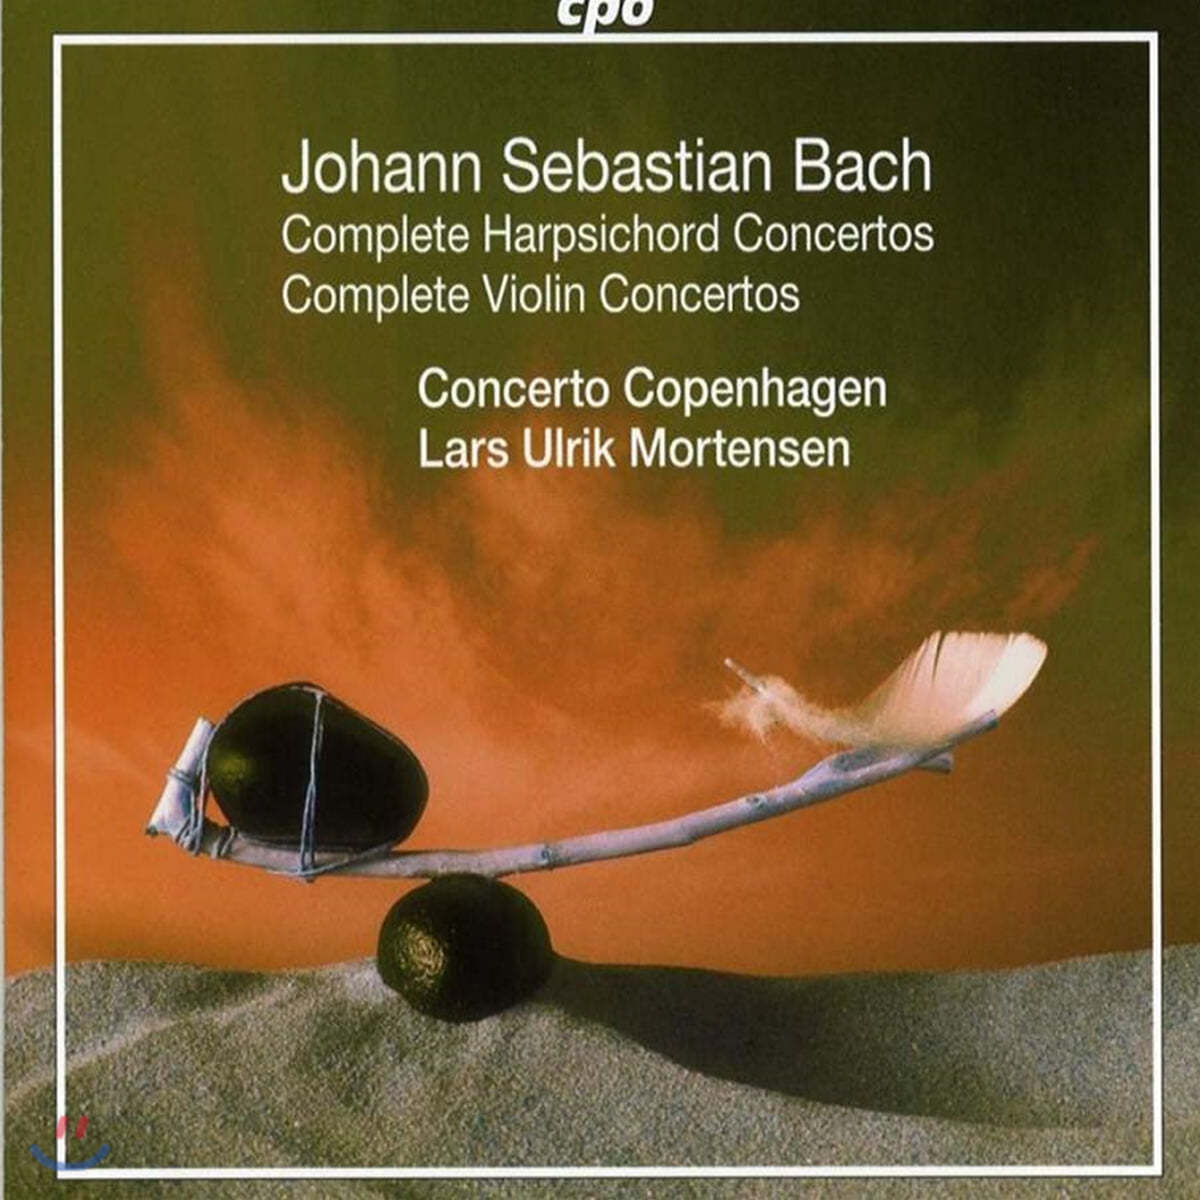 Lars Ulrik Mortensen 바흐: 하프시코드 & 바이올린 협주곡 전곡집 (Bach: Complete Harpsichord Concertos, Complete Violin Concertos)